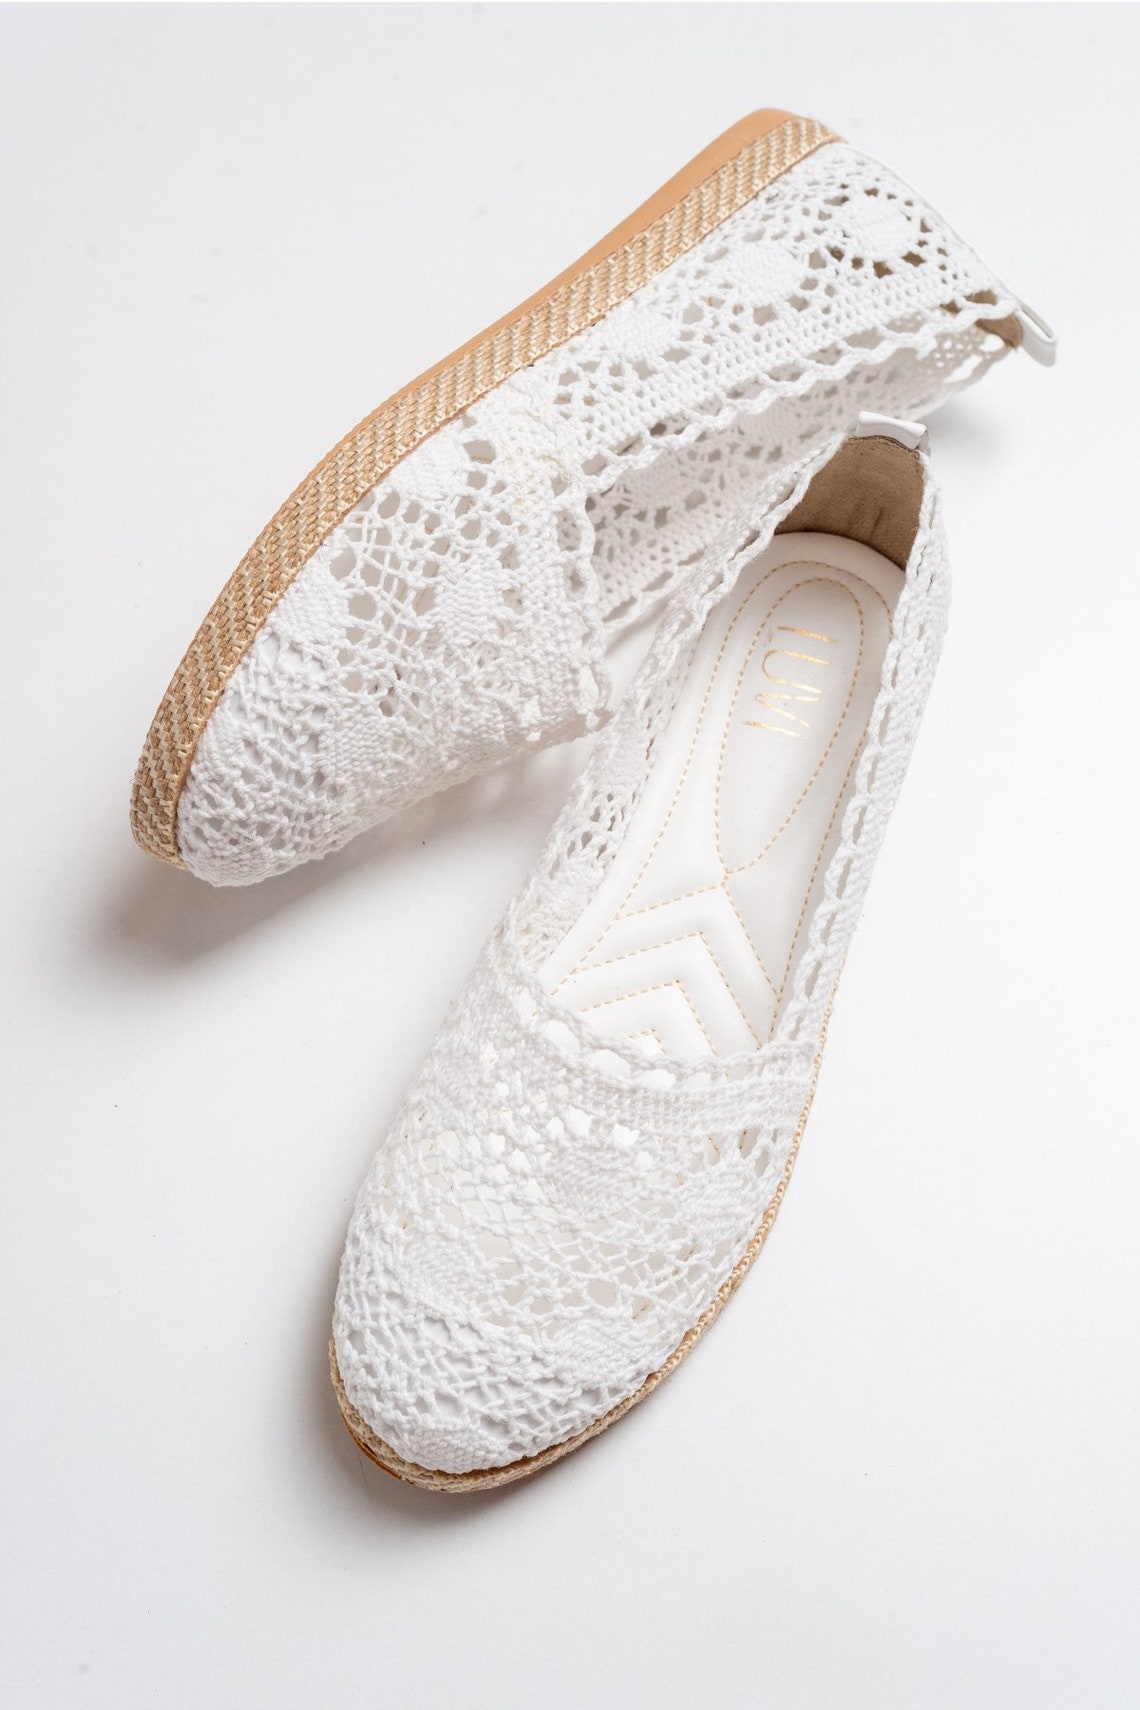 White Lace Up Bridal Espadrilles Boho Wedding Shoes Summer | Etsy